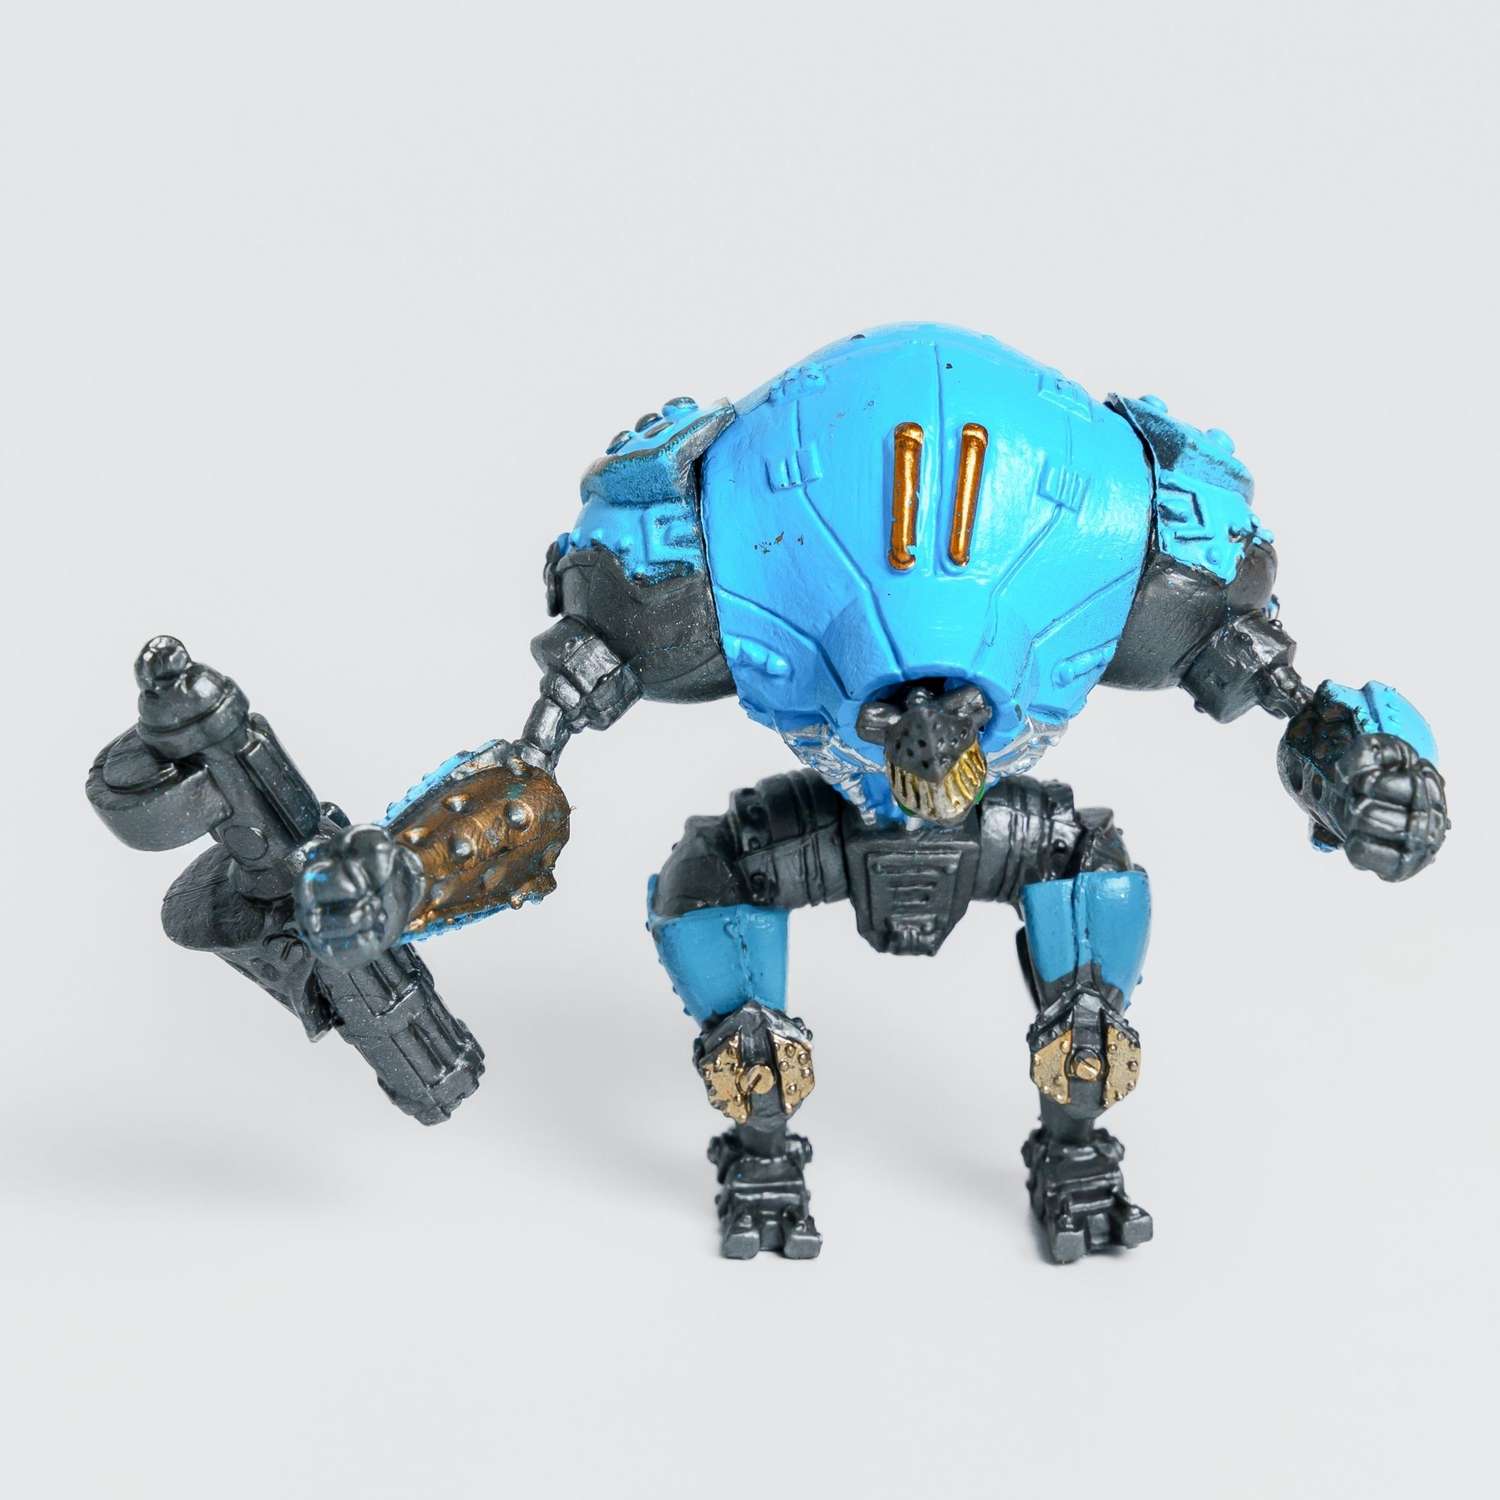 Роботы CyberCode 3 фигурки игрушки для детей развивающие пластиковые коллекционные интересные. 8см - фото 8